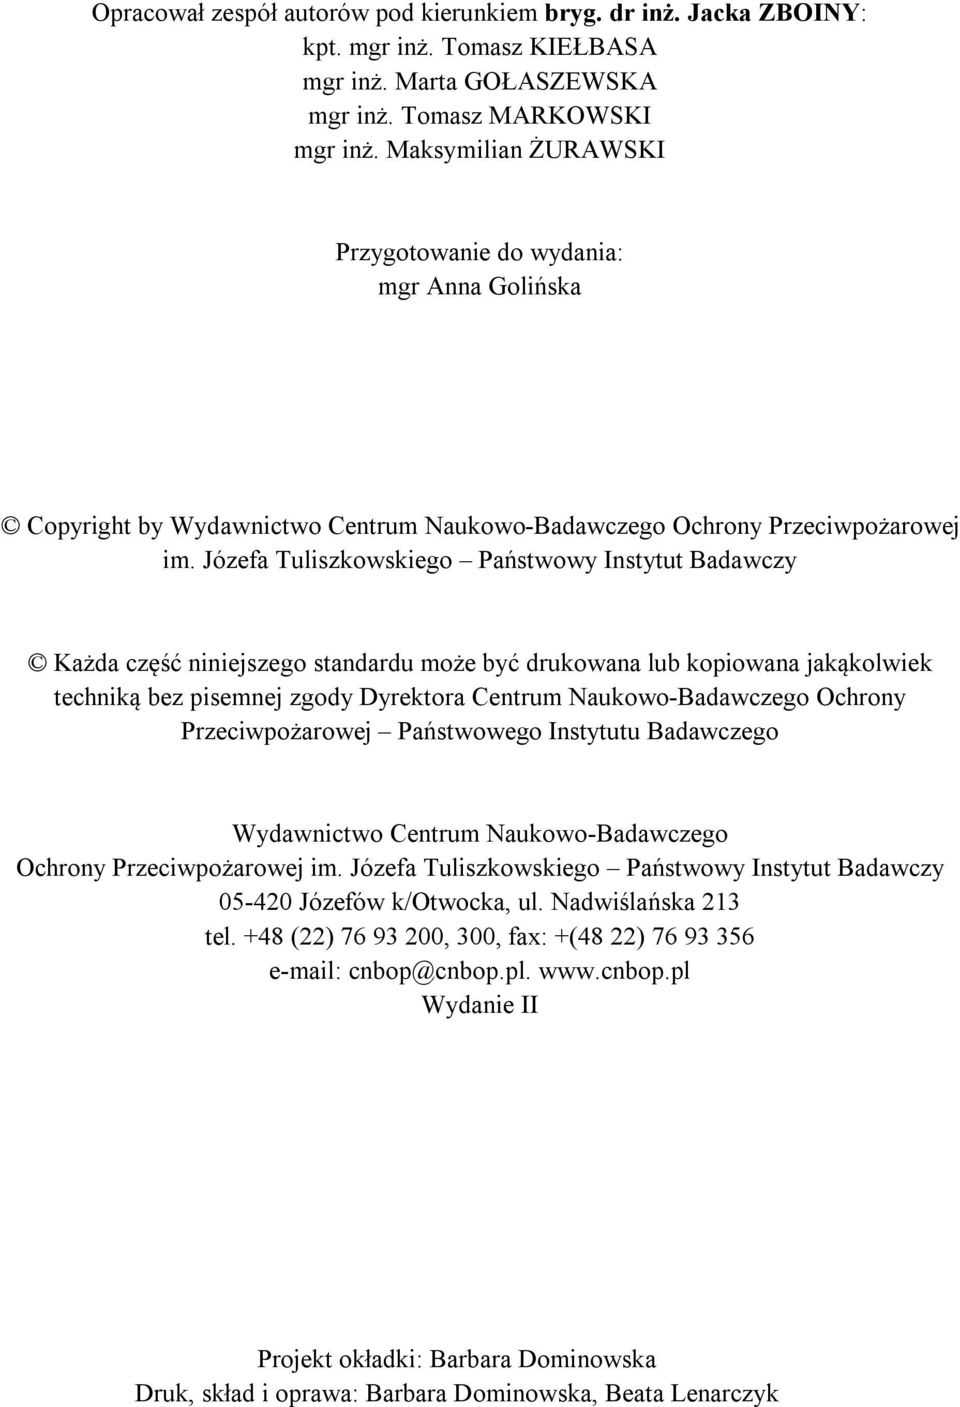 Józefa Tuliszkowskiego Państwowy Instytut Badawczy Każda część niniejszego standardu może być drukowana lub kopiowana jakąkolwiek techniką bez pisemnej zgody Dyrektora Centrum Naukowo-Badawczego